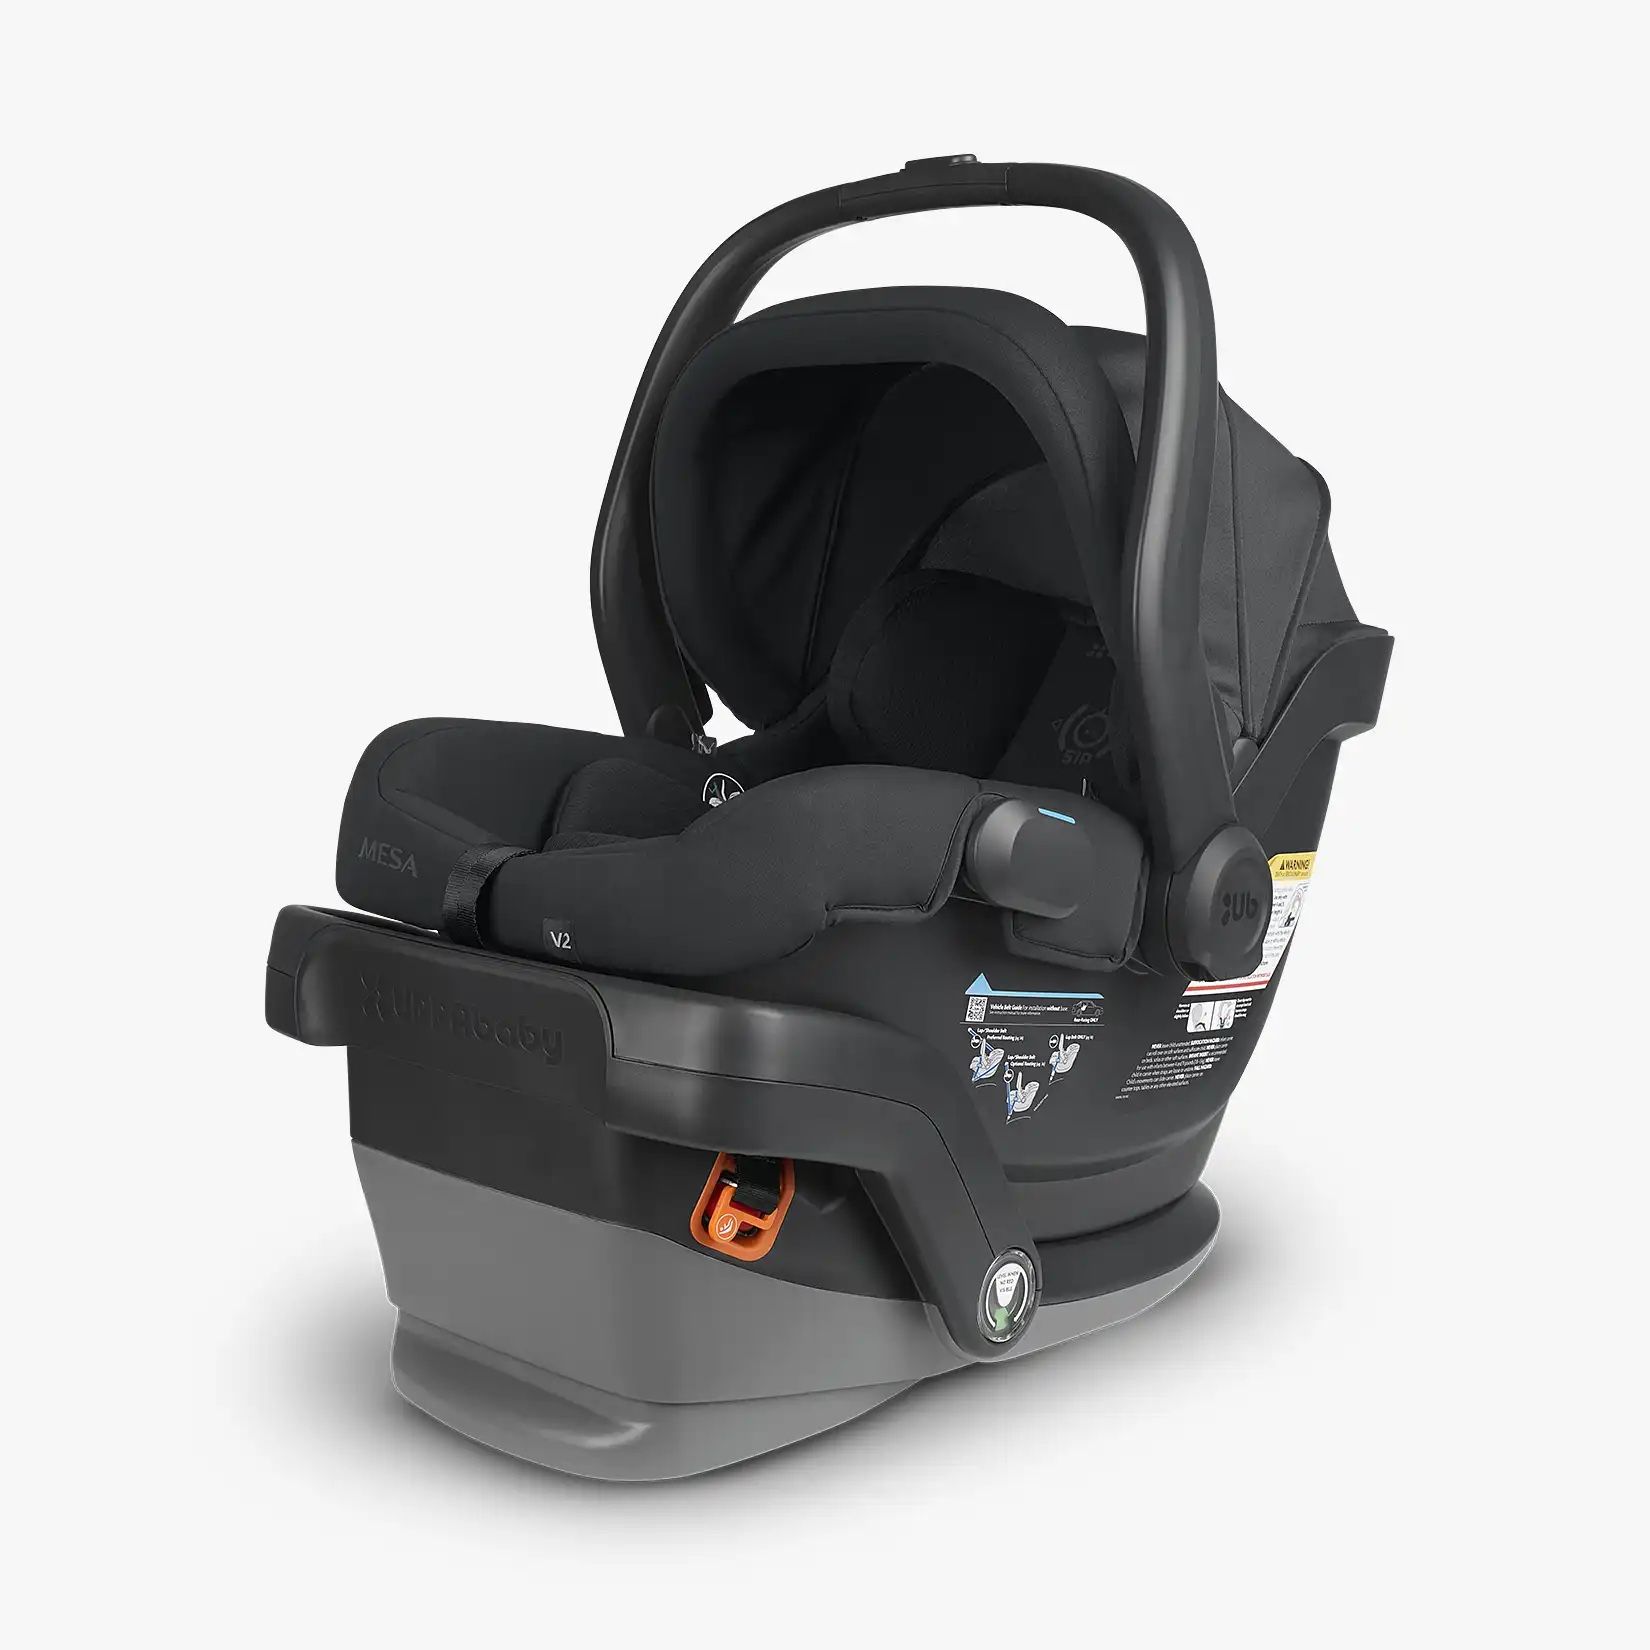 UPPAbaby - Mesa V2 Infant Car Seat